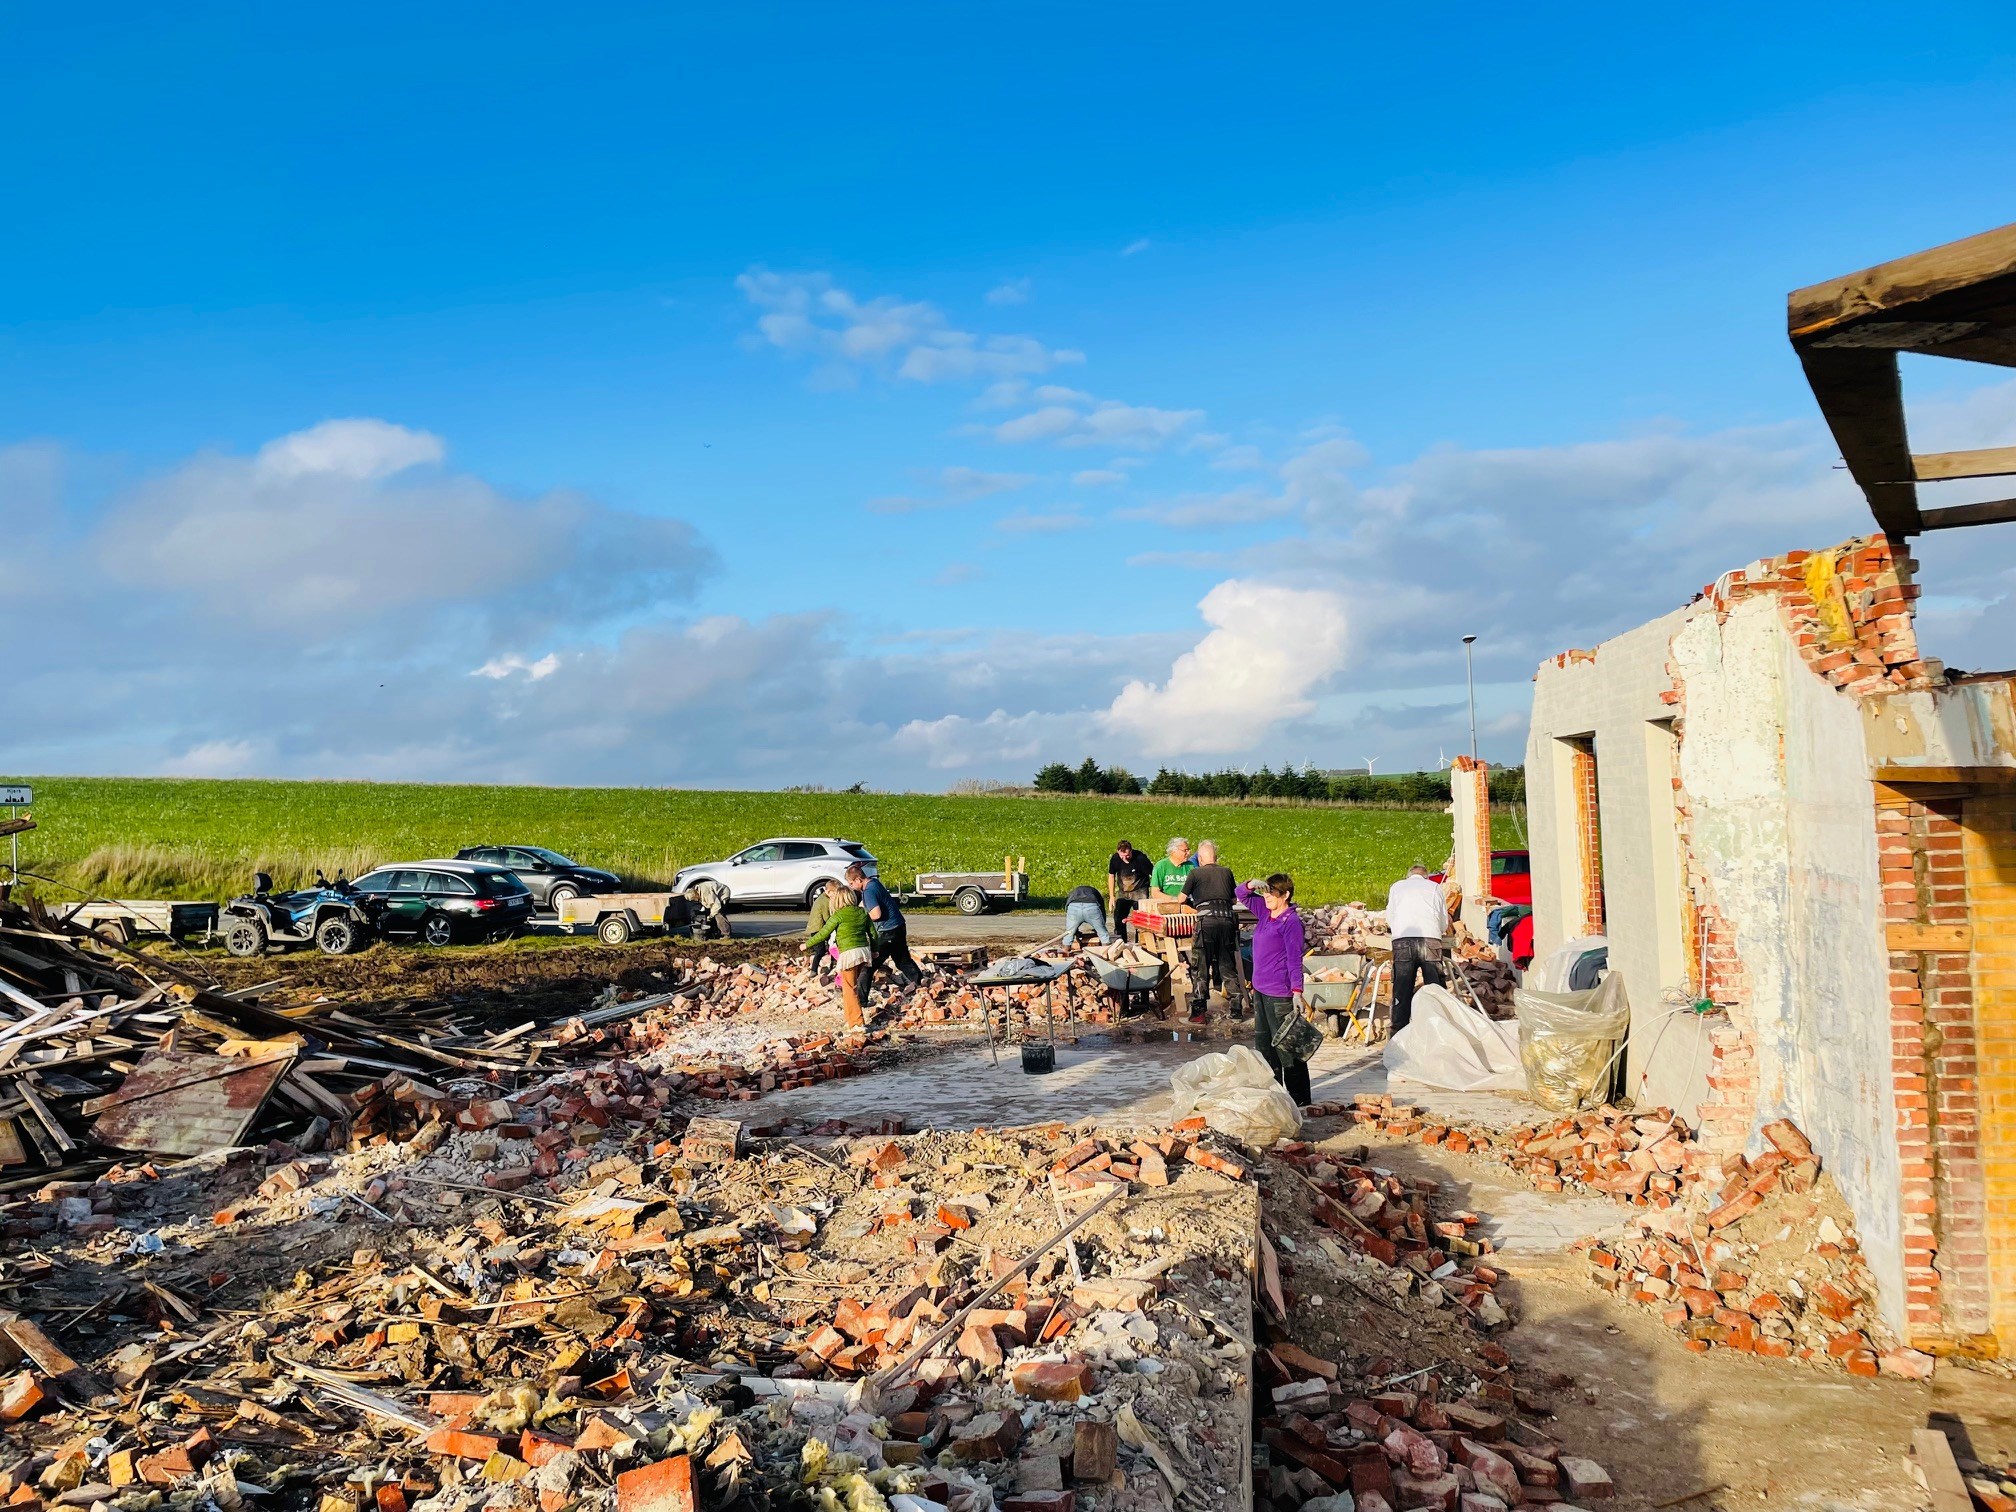 I Hjerk har frivillige brugt 1000 timer på at rive det gamle forsamlingshus ned og rense murstenene, som skal bruges til at opføre det nye og kommende Harrevig Grønne Samlingshus.  Foto: Inger Arensbach.